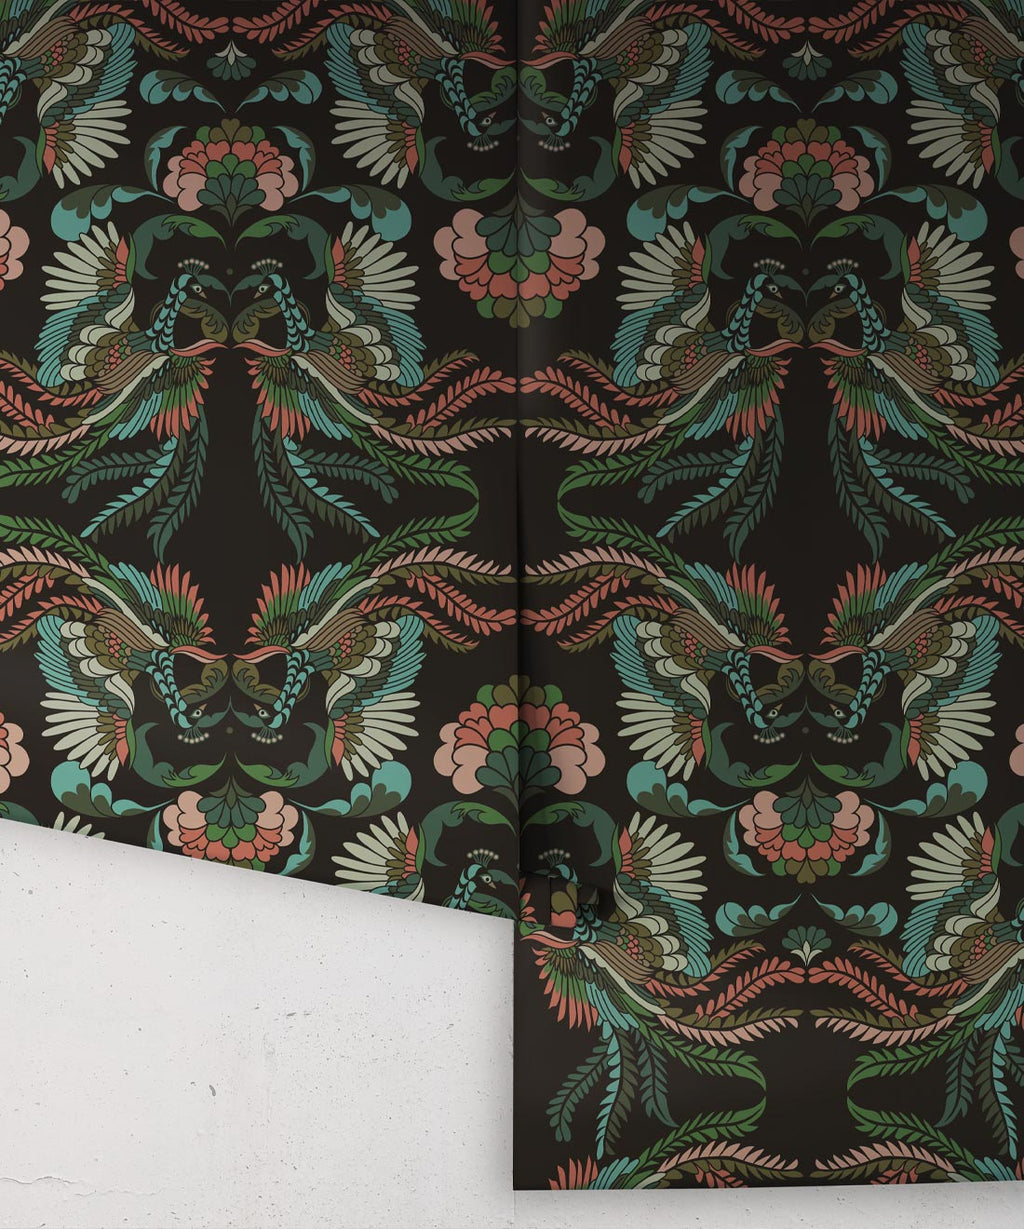 Prancing Peacocks Wallpaper